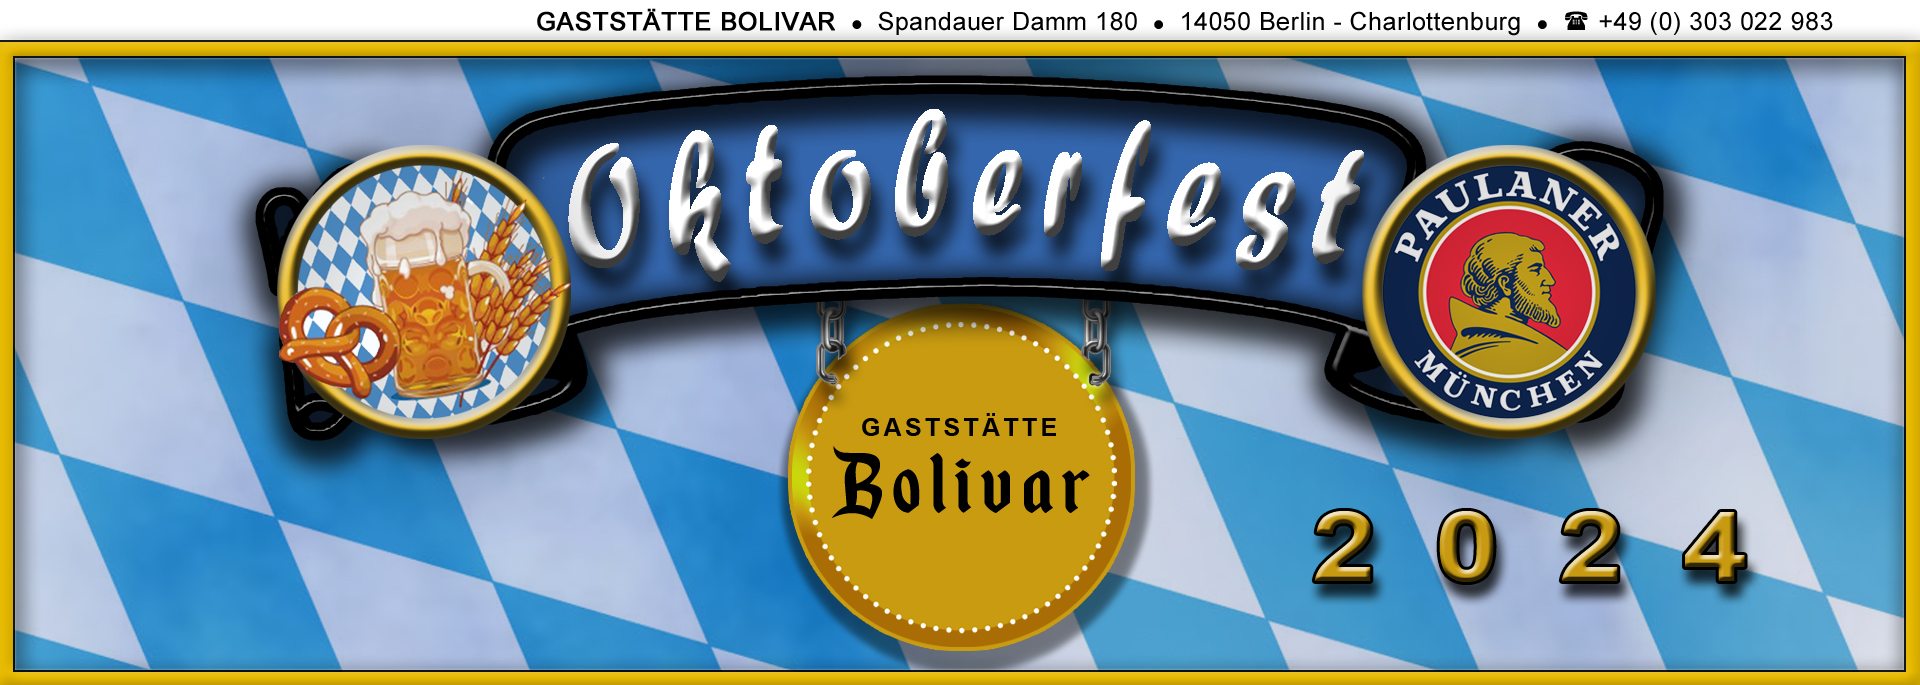 bolivar-berlin-charlottenburg-wilmersdorf-westend-spandau-siemensstadt-oktoberfest-2024